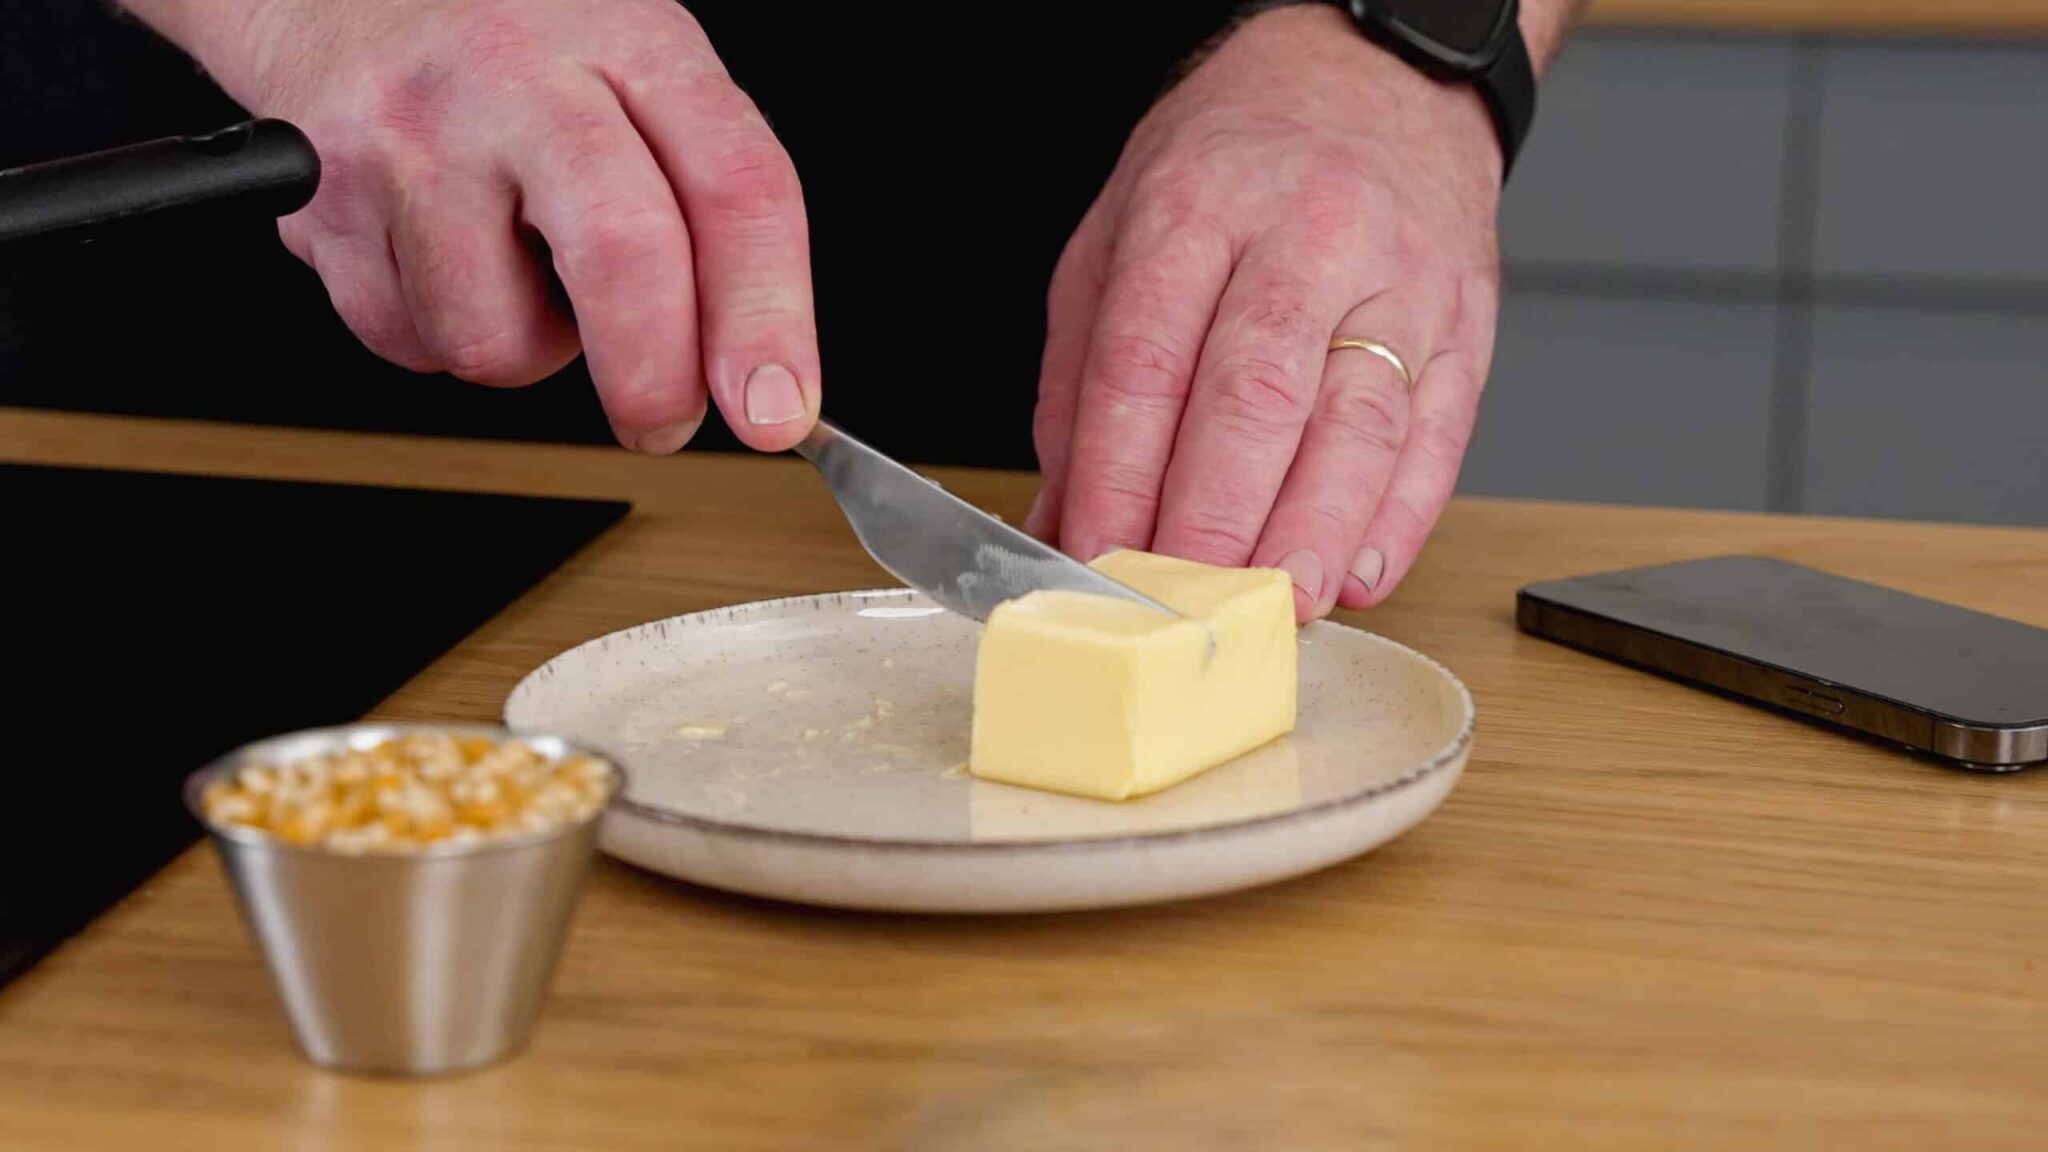 Smør der ligger på en tallerken ved siden af et decilitermål med popcornsmajs.